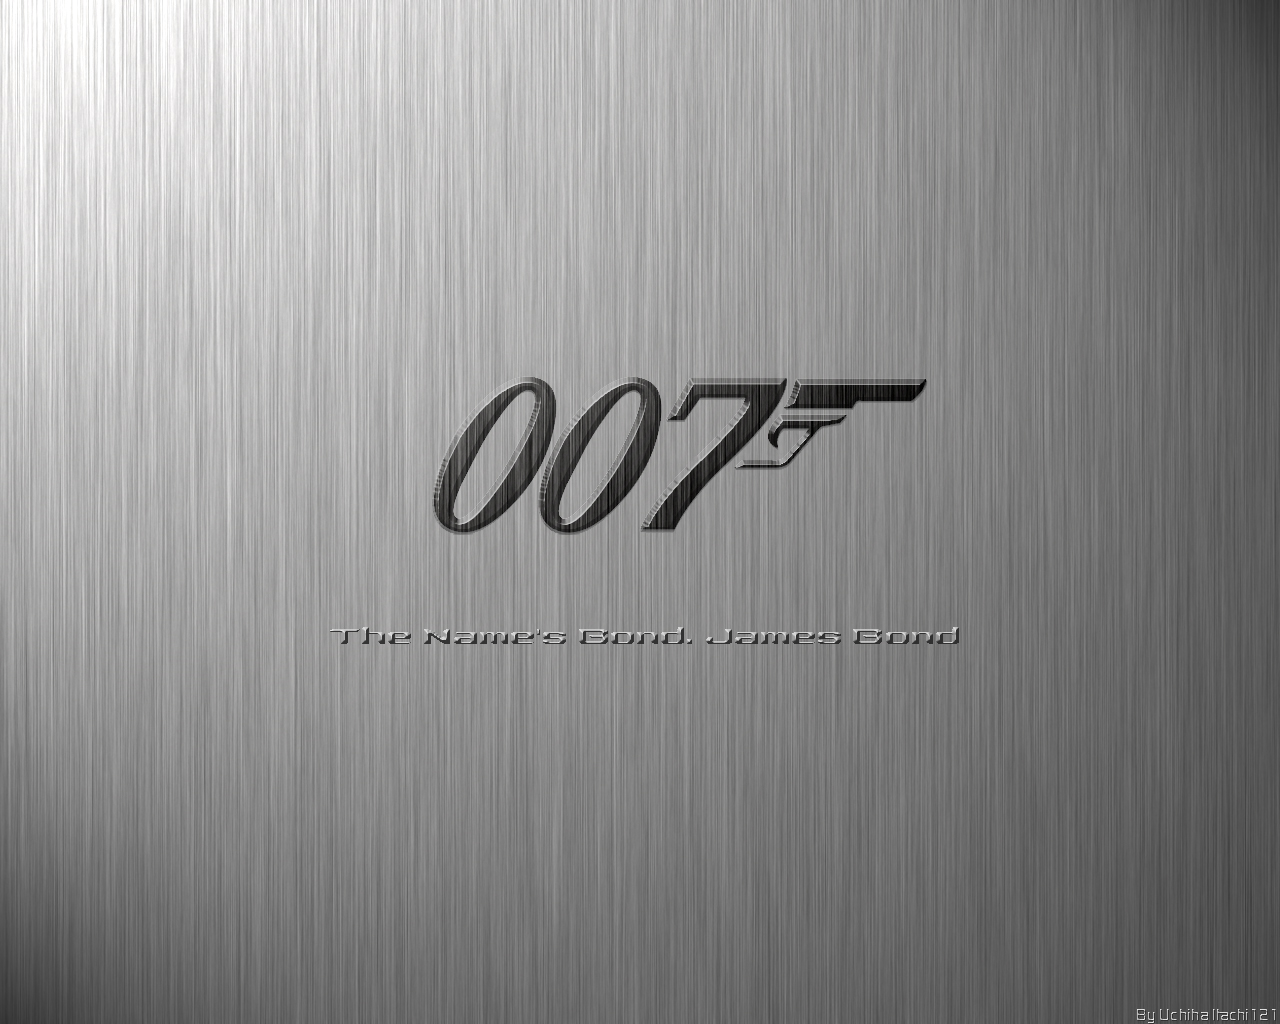 James Bond 007 Wallpapers HD Desktop iPhones Backgrounds